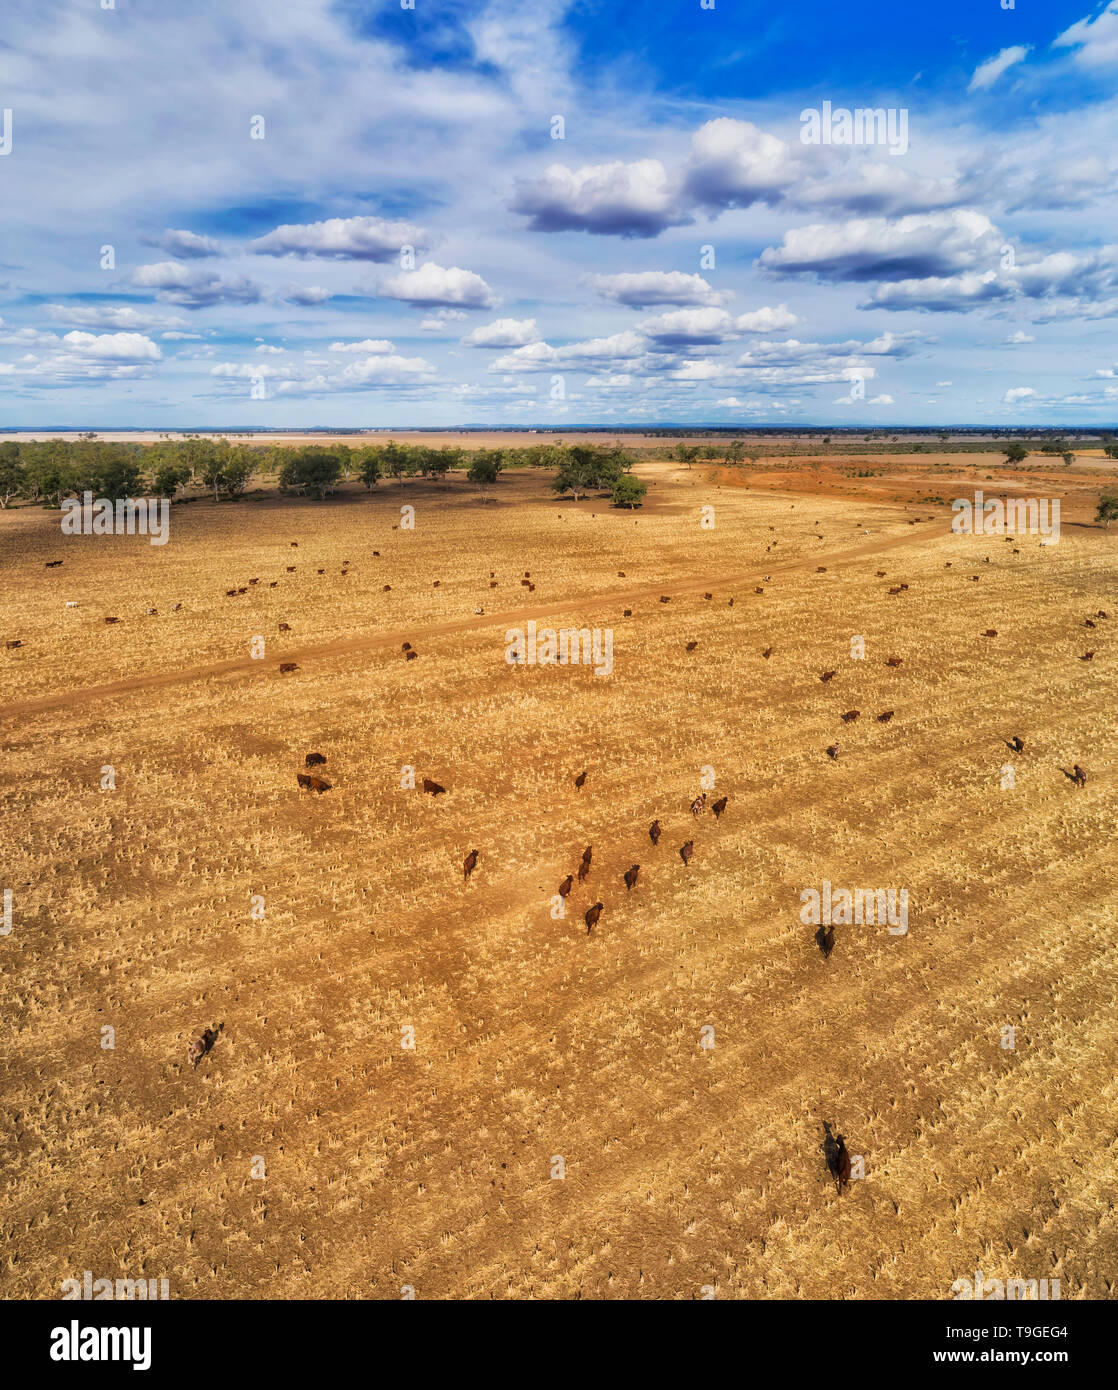 Flache Ebene des harversted Ackerland um Moree Stadt mit der Verfütterung von unter blauem Himmel in Antenne erhöhte vertikale Ansicht über Stiere und Kühe. Stockfoto